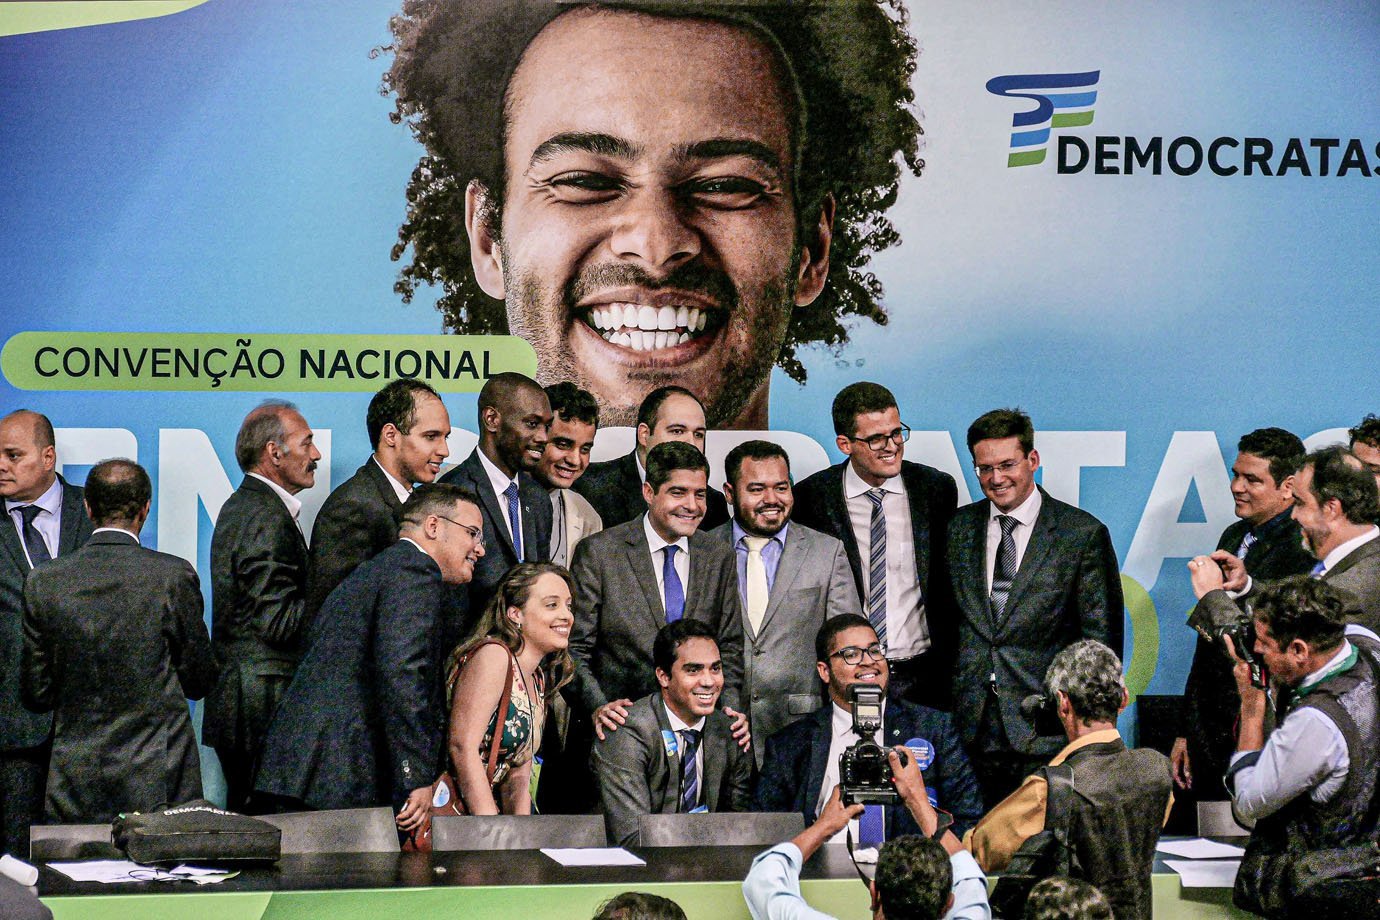 Prefeito de Salvador, ACM Neto discursa na Convenção Nacional do Democratas. Brasília, 08/03/2018 - Foto Orlando Brito DEM - eleição - eleições - eleições municipais